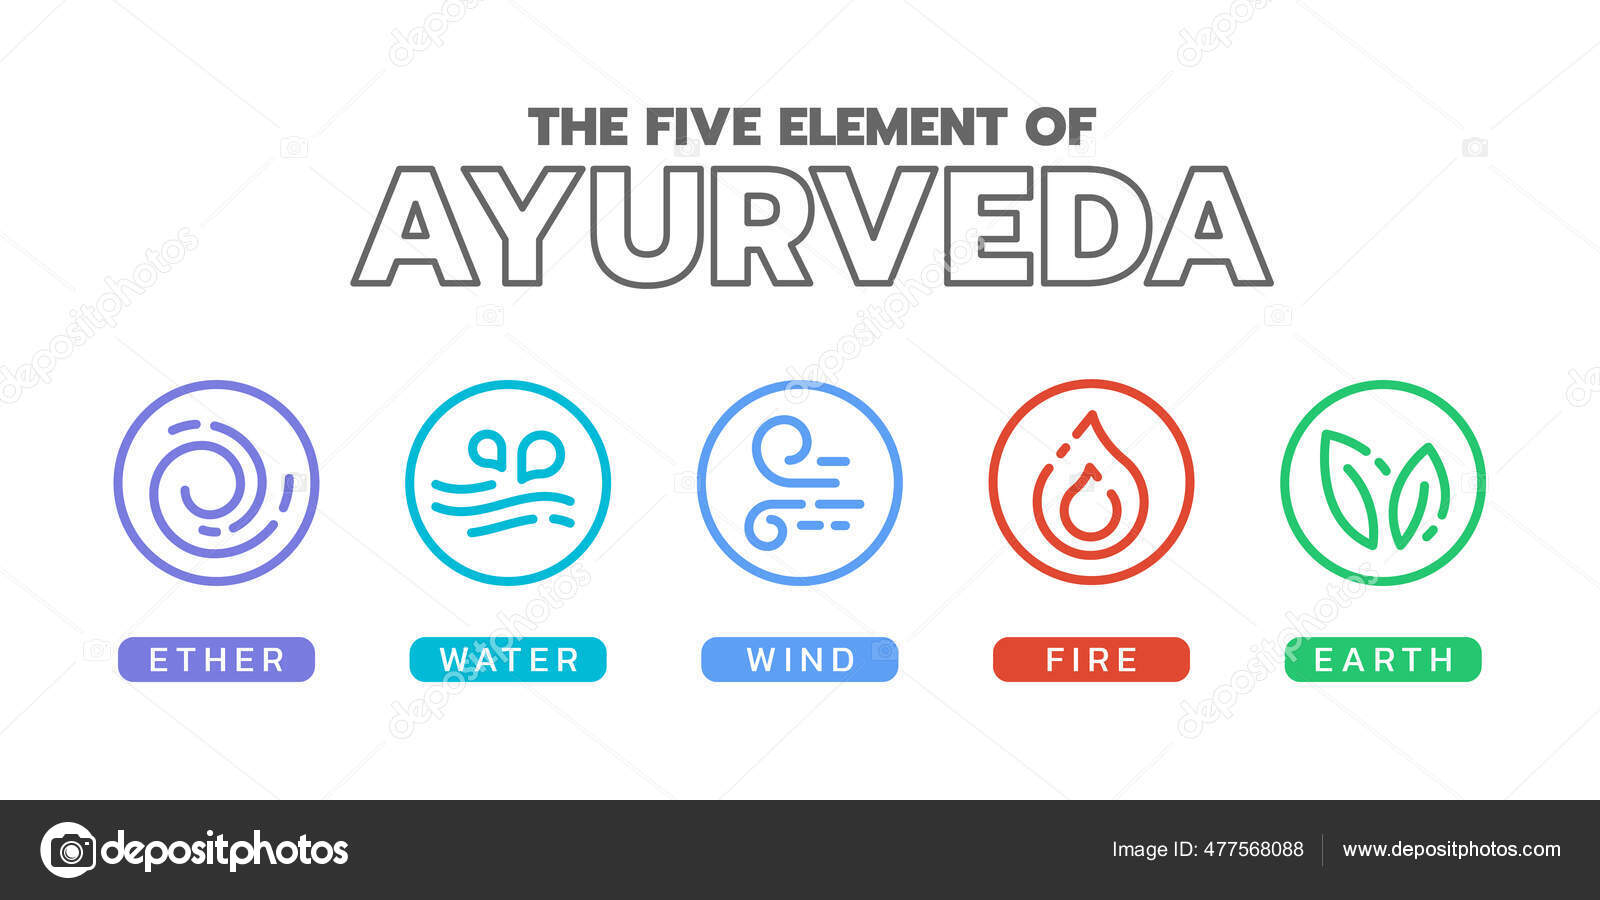 Terra Da água Do Fogo Do Ar Do éter De Cinco Elementos De Ayurveda